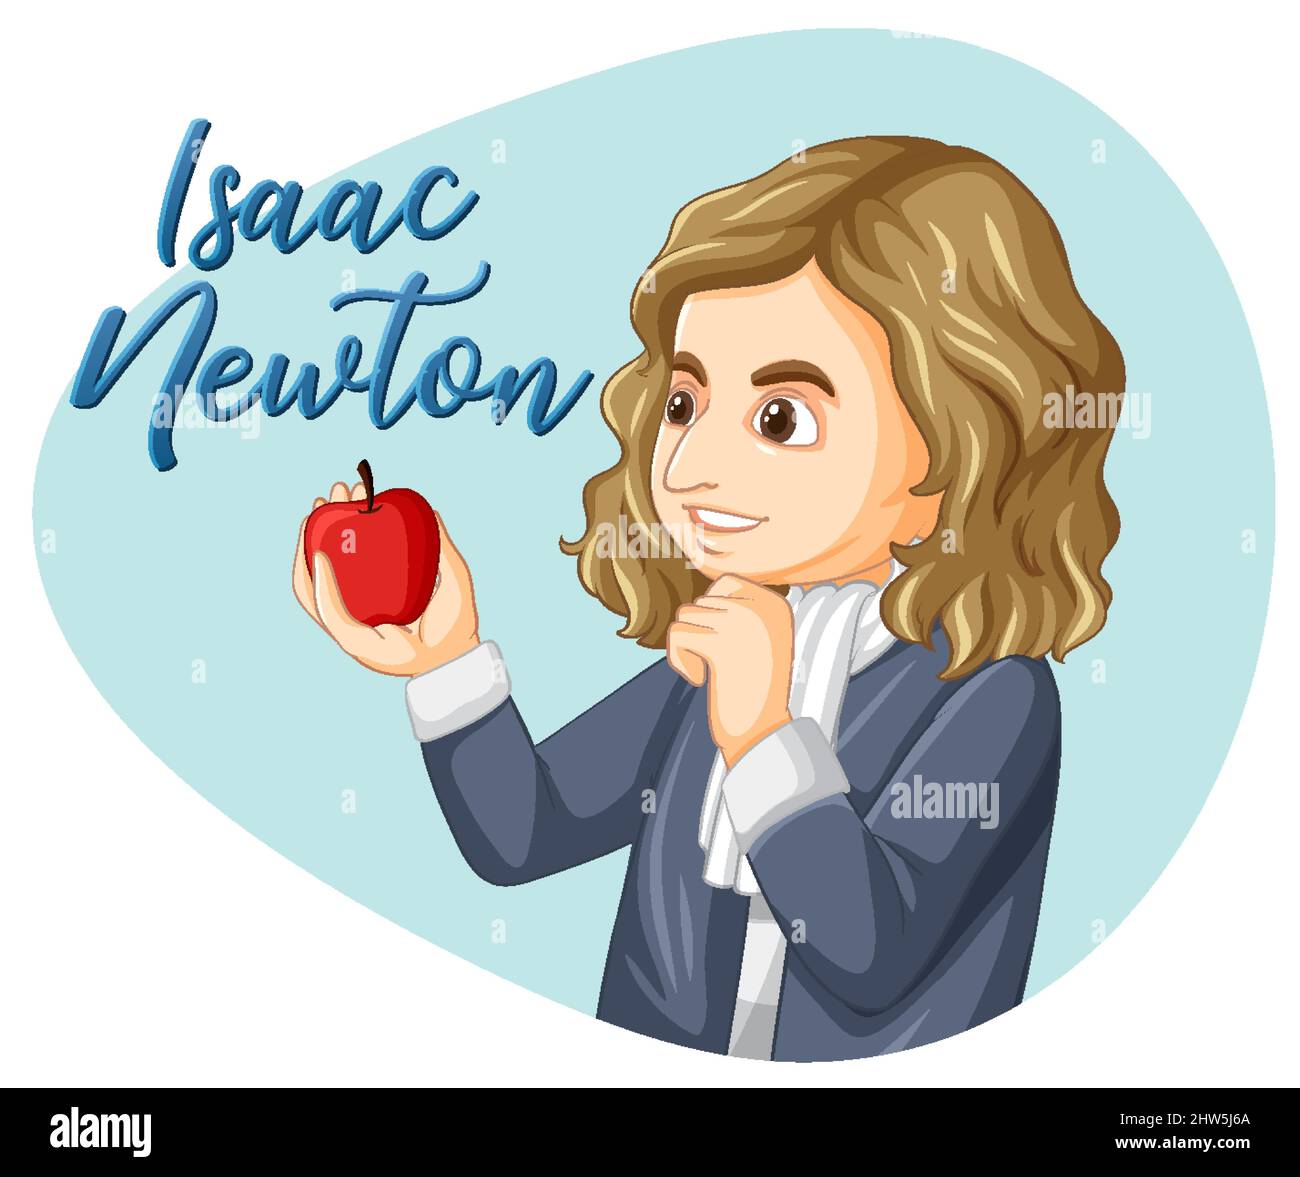 Portrait of Isaac Newton in cartoon style illustration Stock Vector